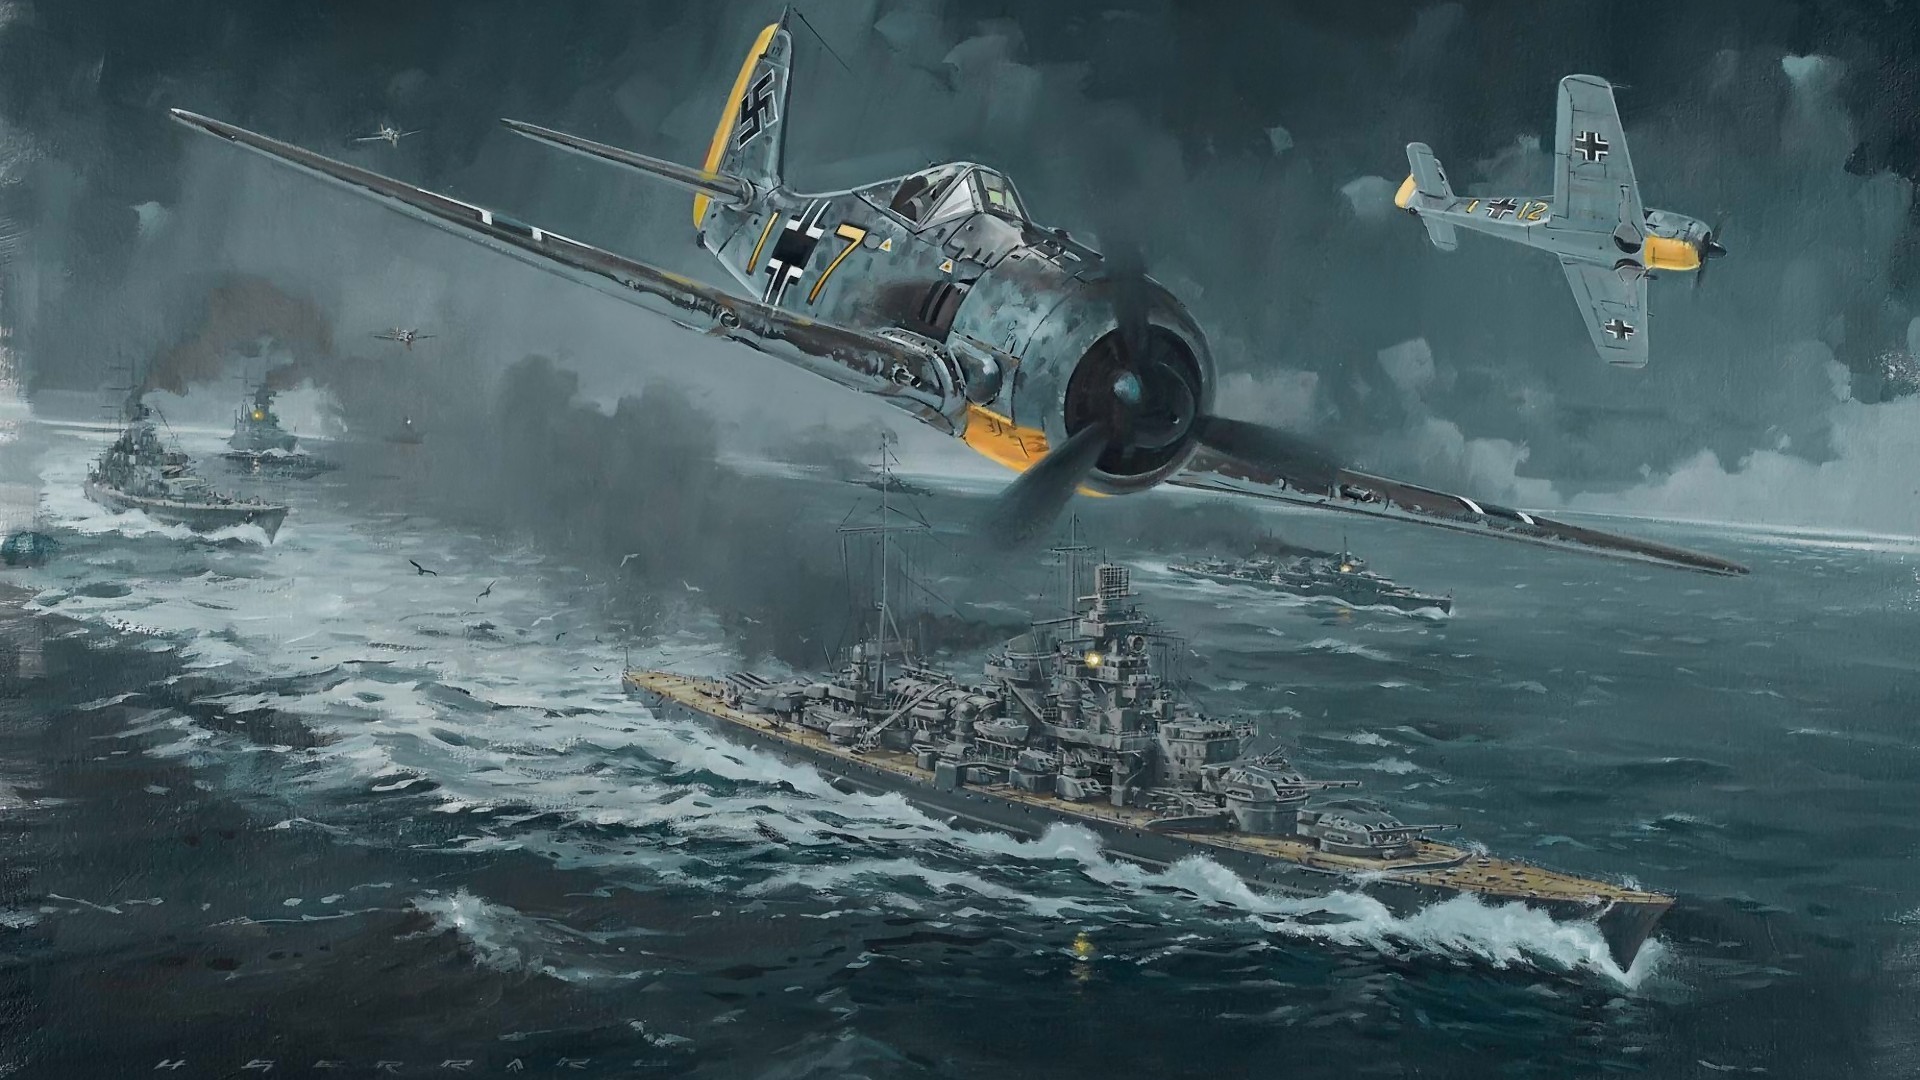 Wallpapers World War Two Aircraft Ii 1920x1080 #world